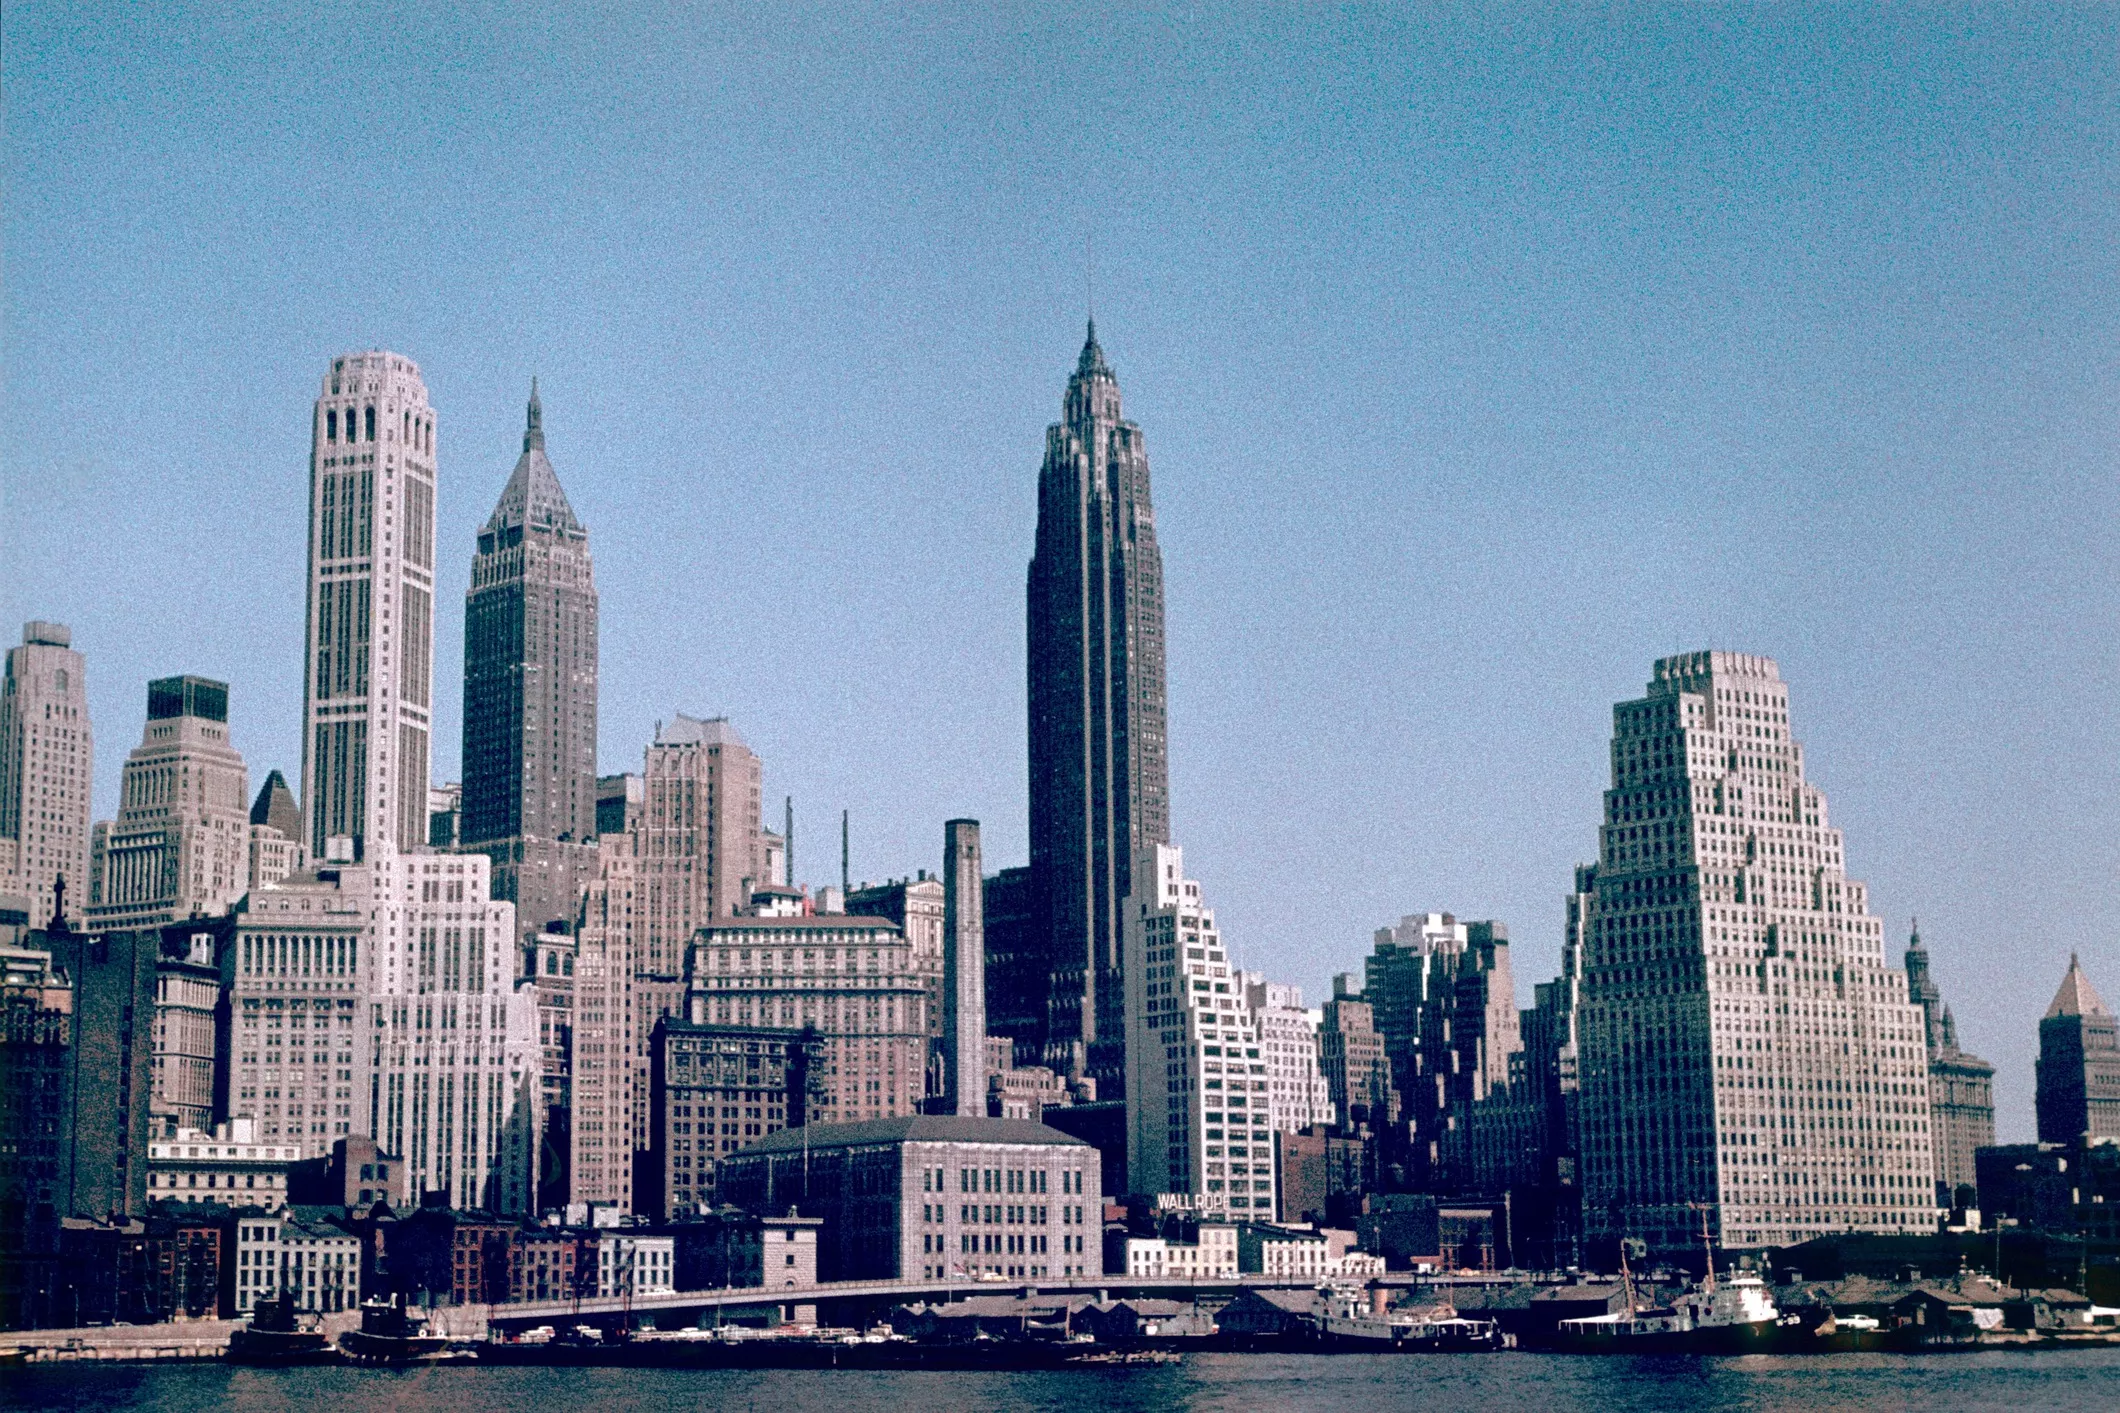 Nova York als anys 50